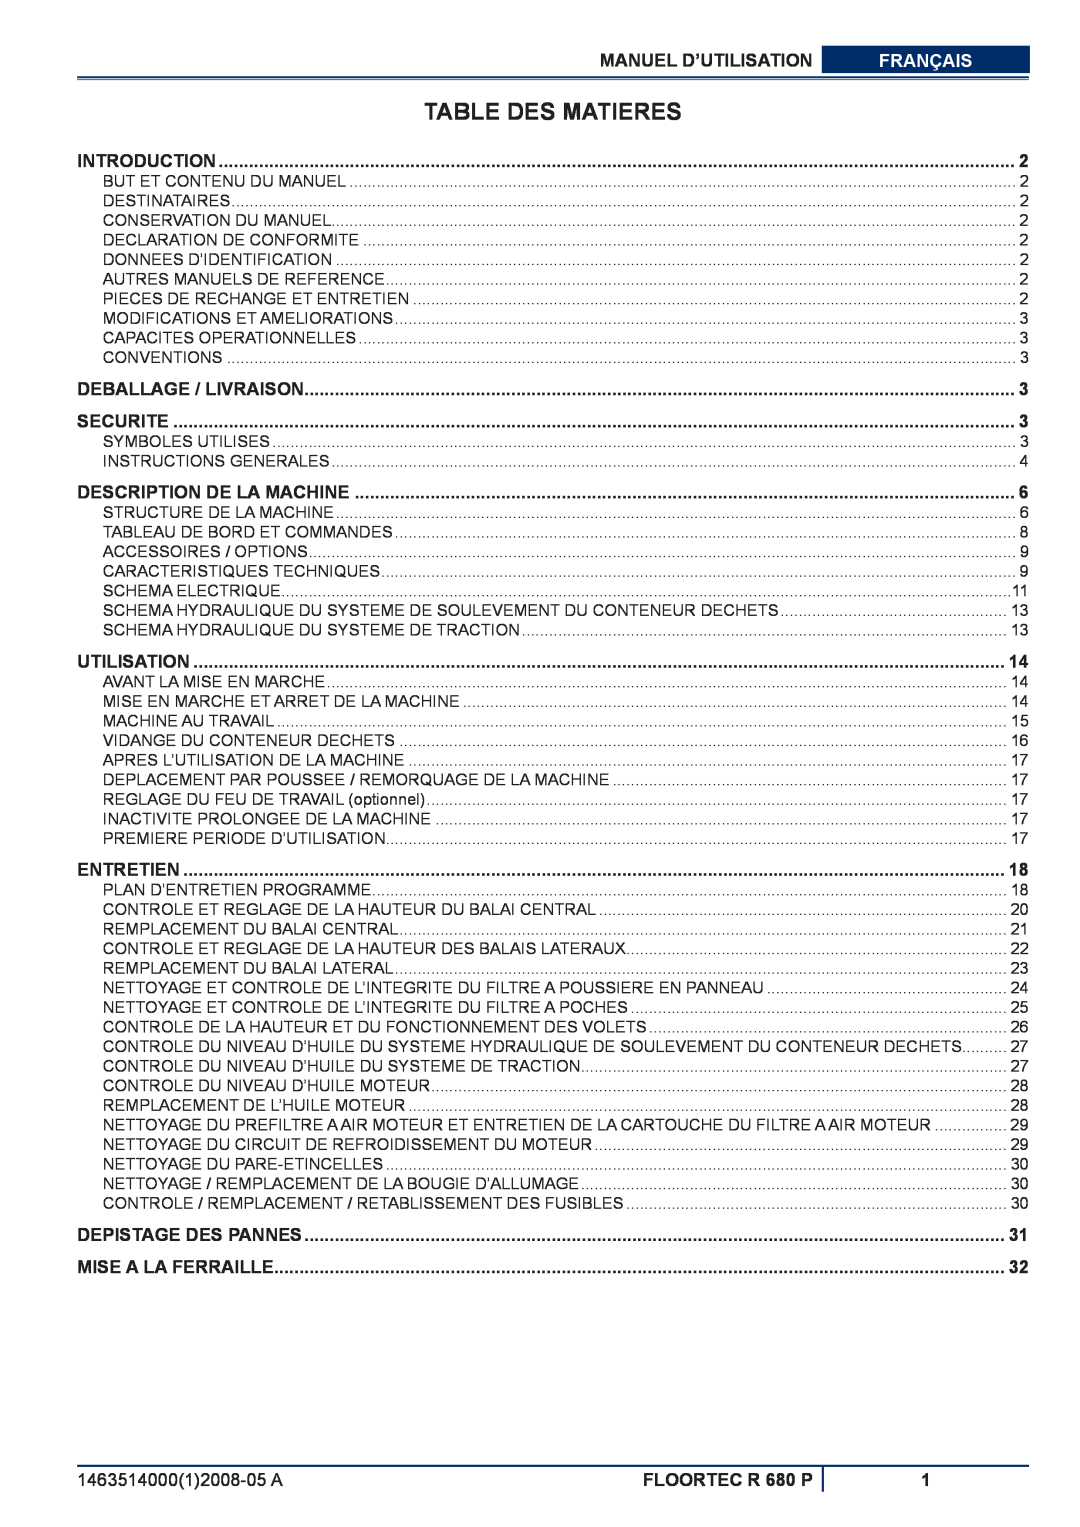 Nilfisk-ALTO Table Des Matieres, Manuel D’Utilisation, Français, FLOORTEC R 680 P, Introduction, Deballage / Livraison 